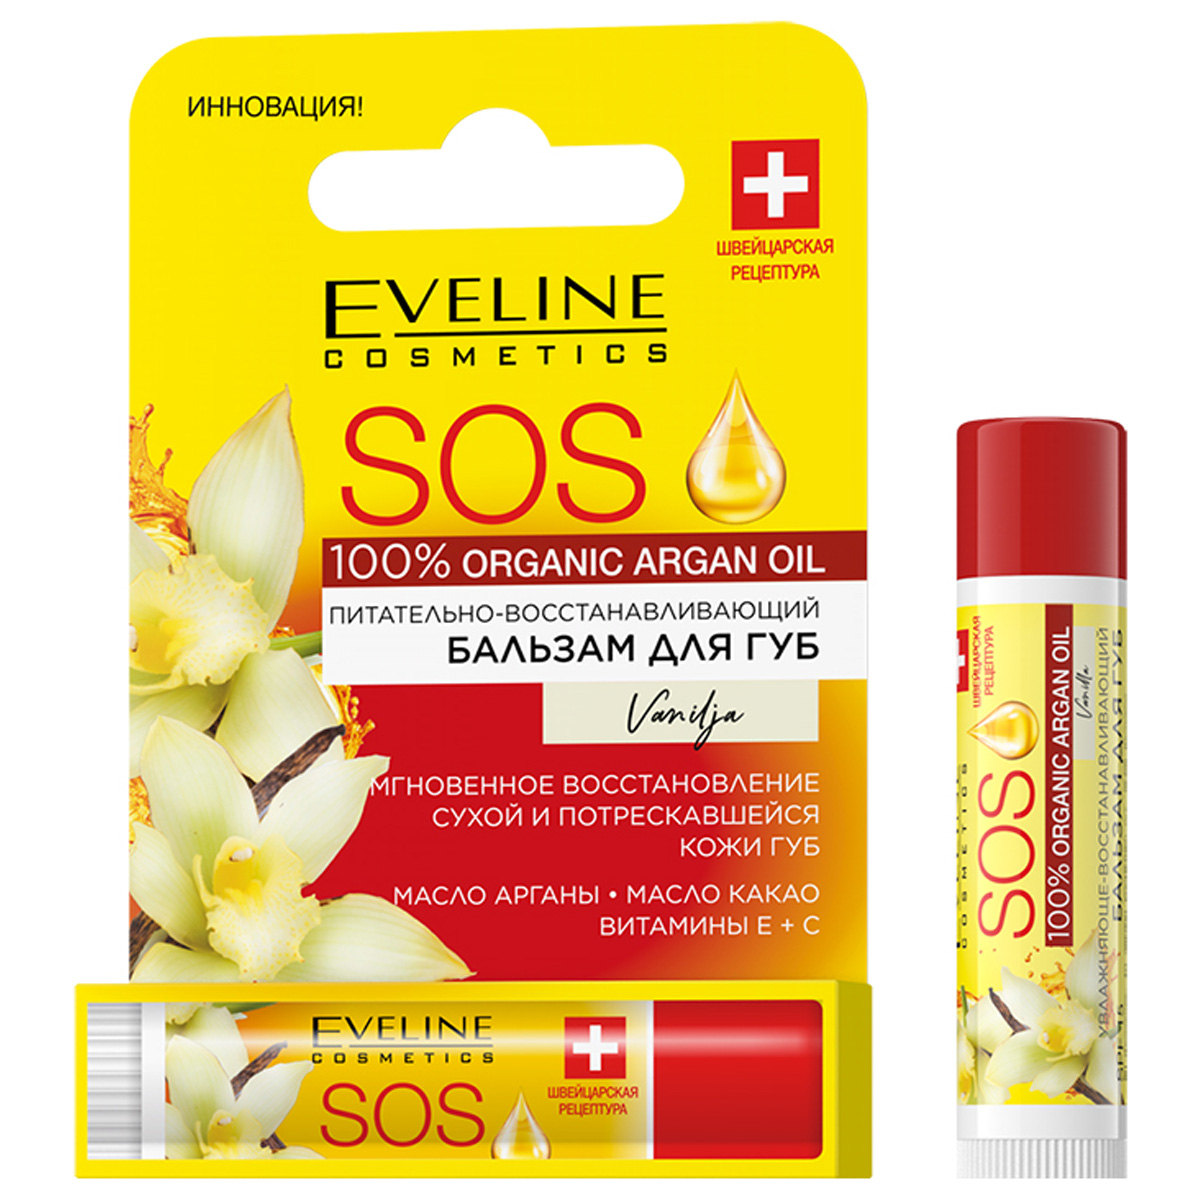 Бальзам для губ Eveline Cosmetics с аргановым маслом Vanilla 4,5г бальзам для губ eveline sos argan oil ваниль spf 15 питательно восстанавливающий 4 5 г